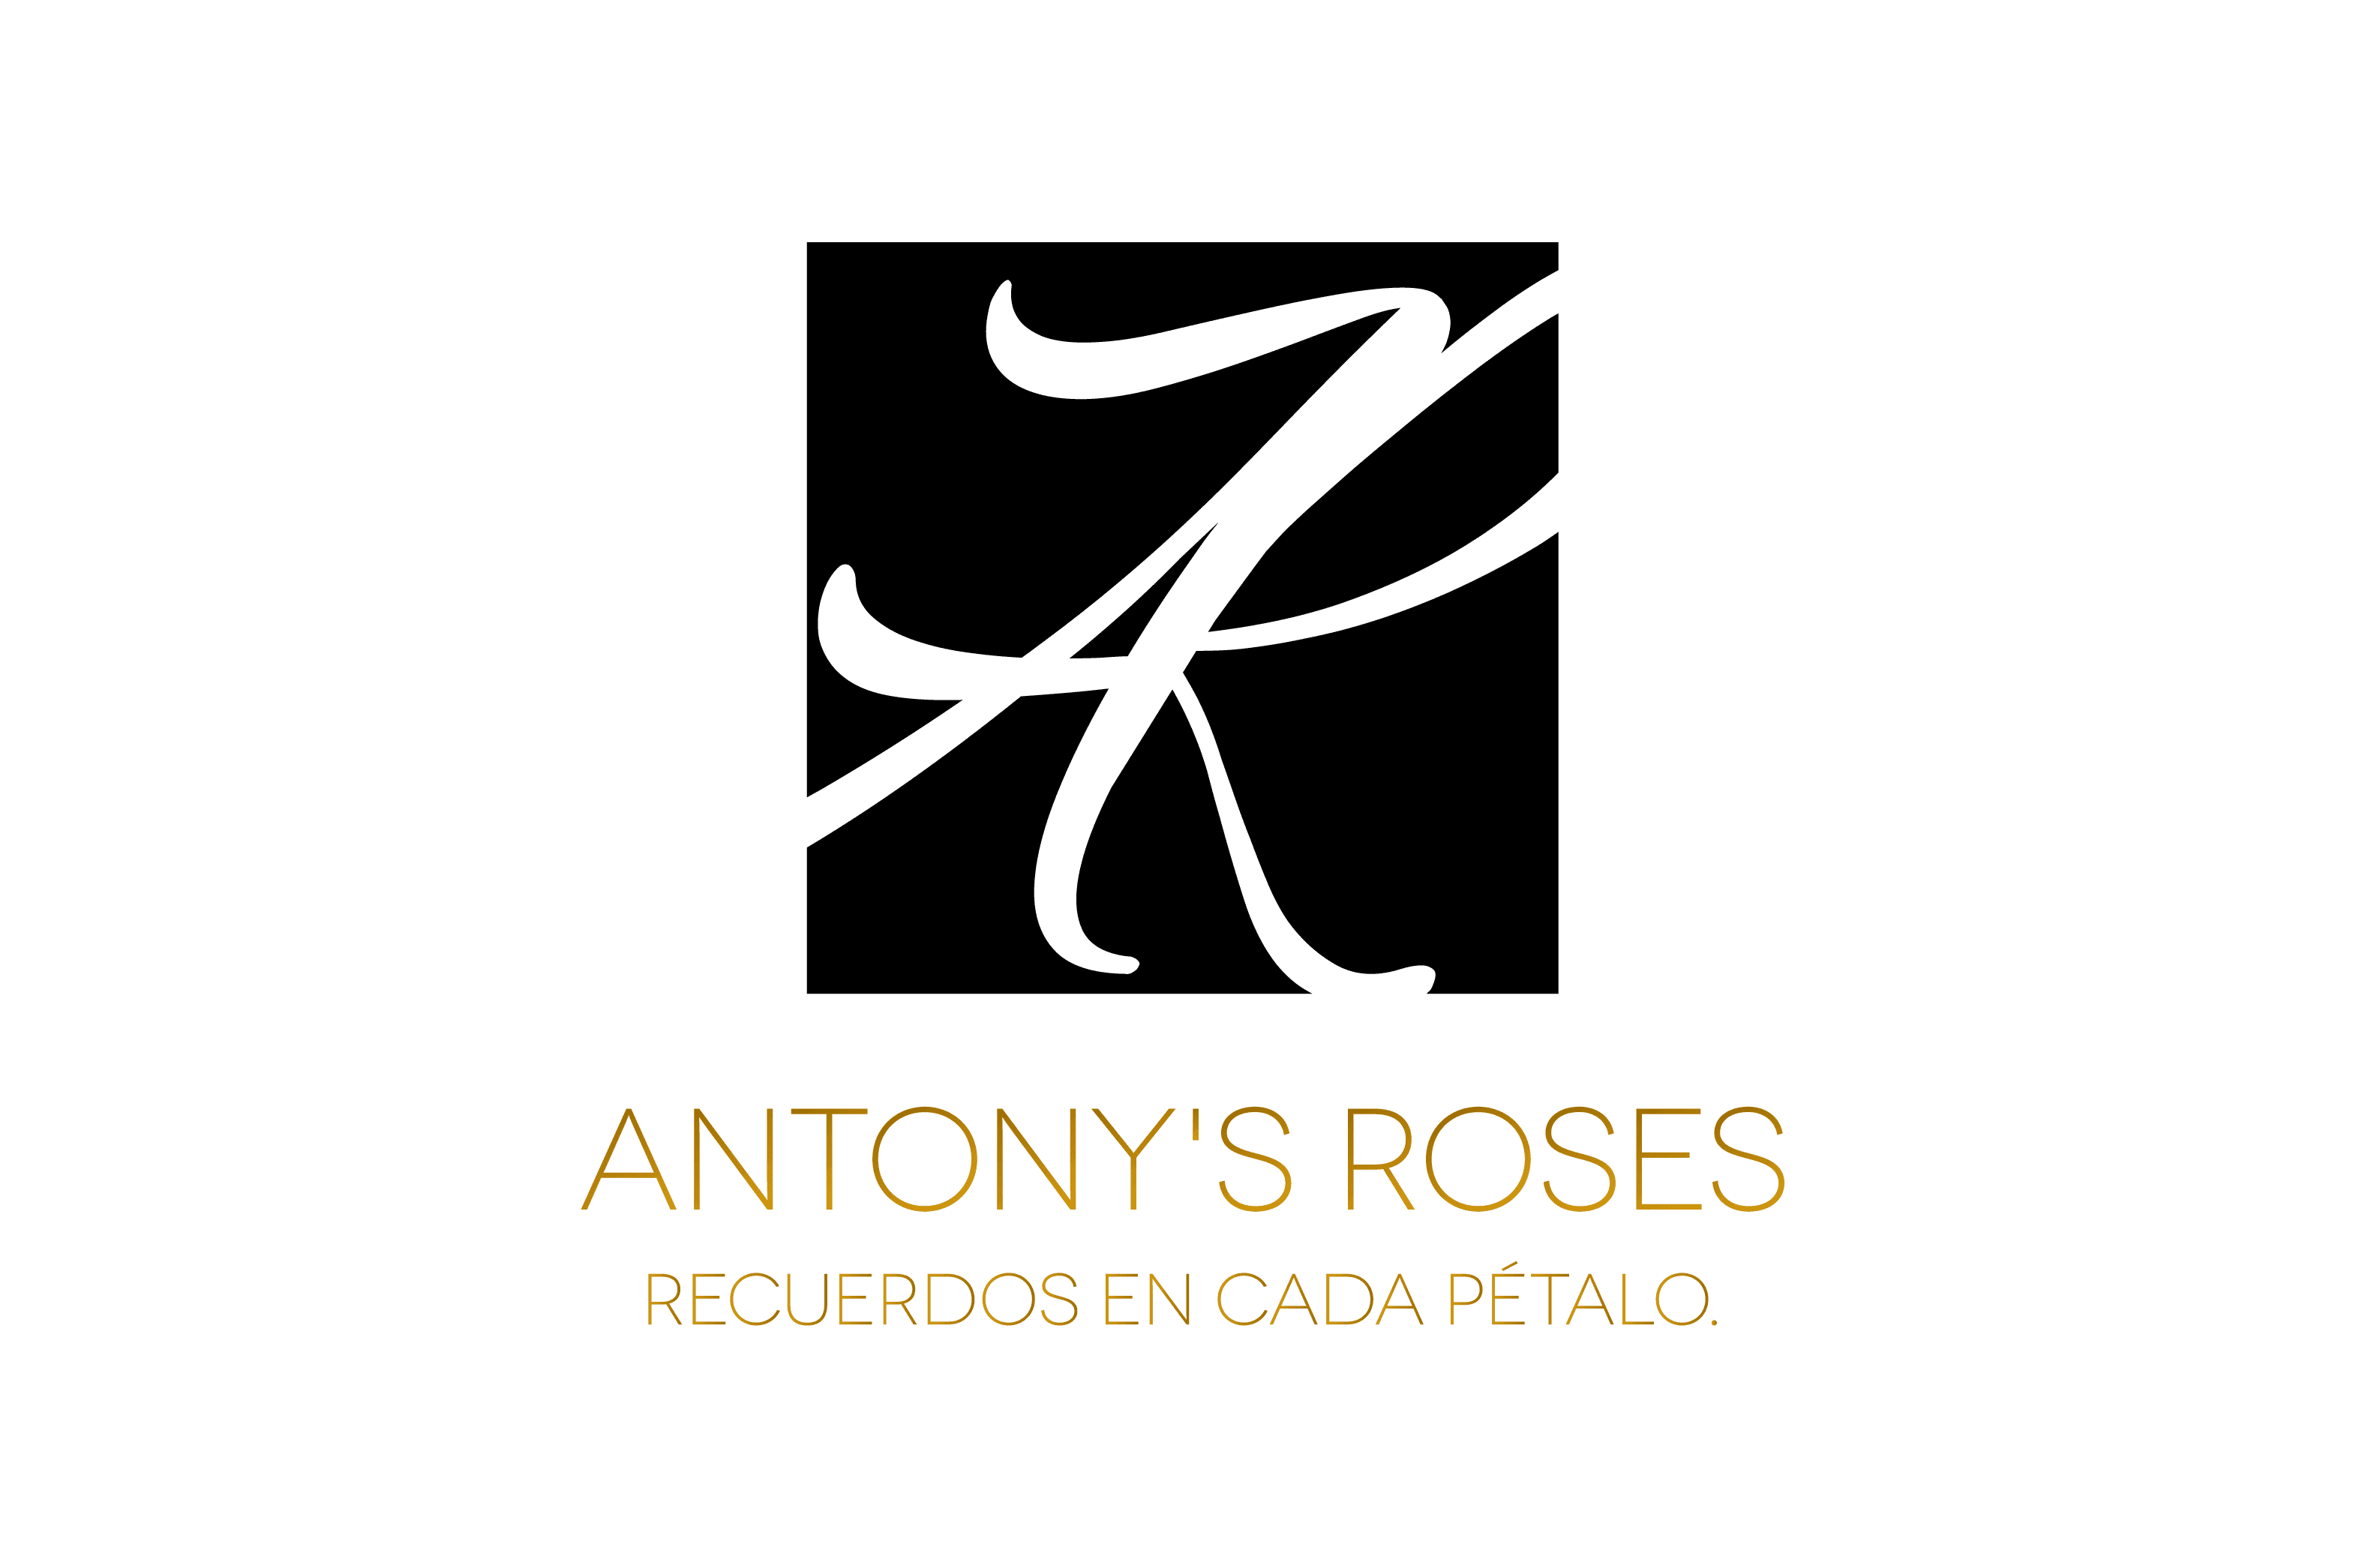 Antony’s Roses